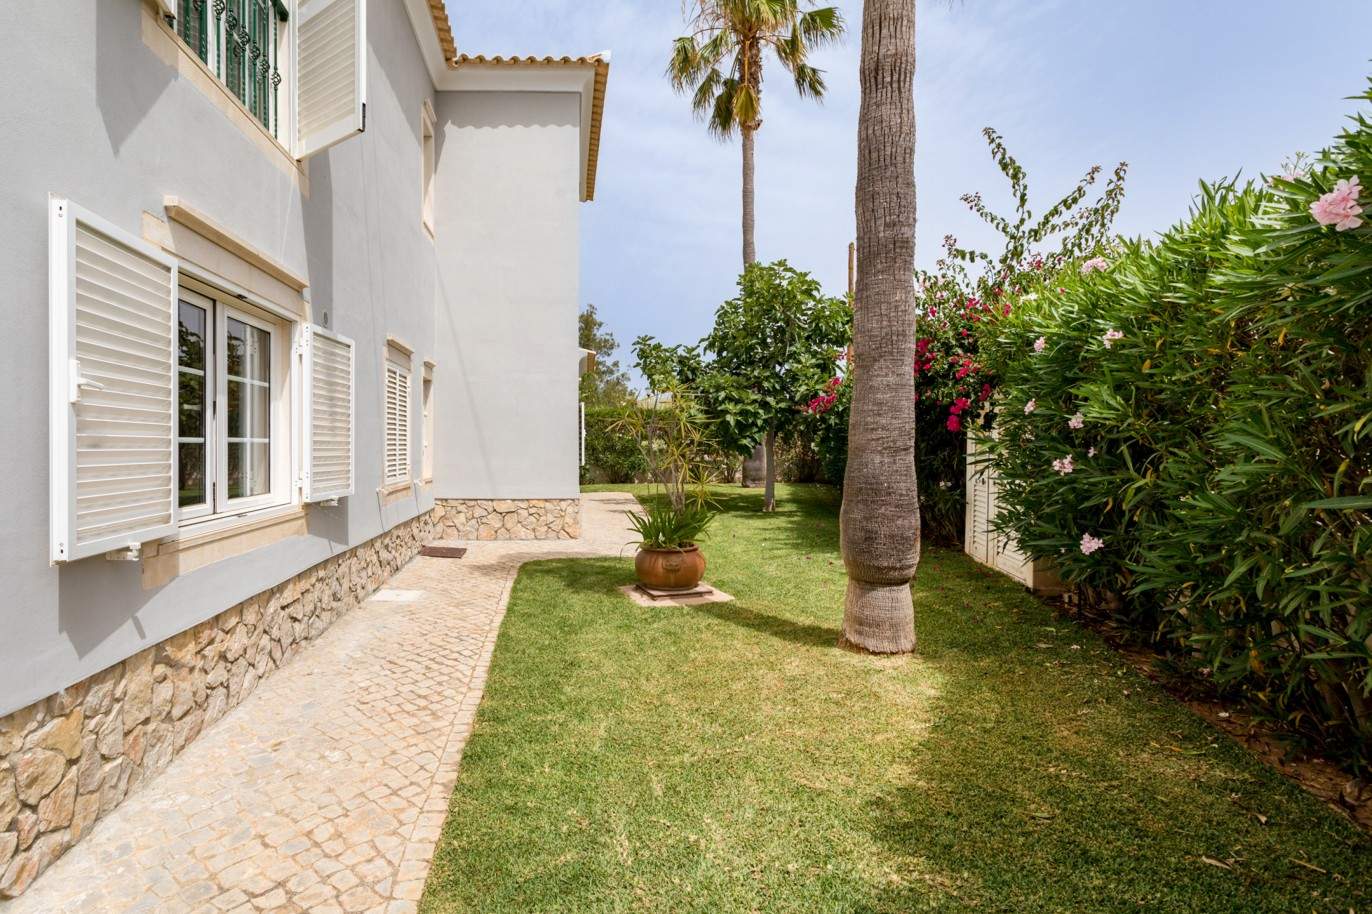 4 Bedroom Villa with pool à vendre à Quarteira, Algarve_201735